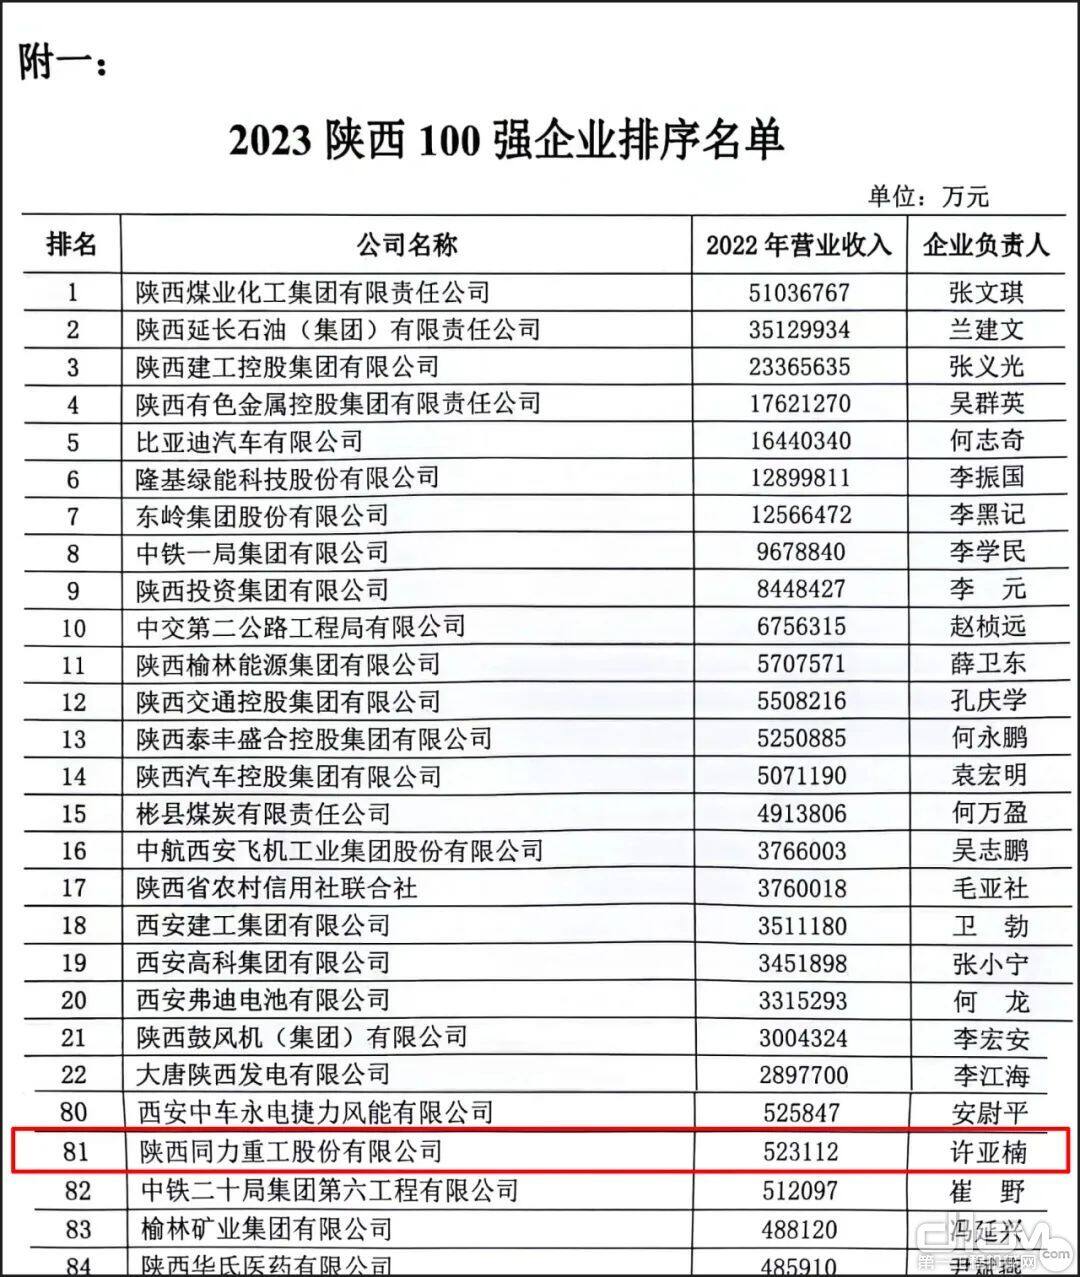 2023陕西100强企业排序名单